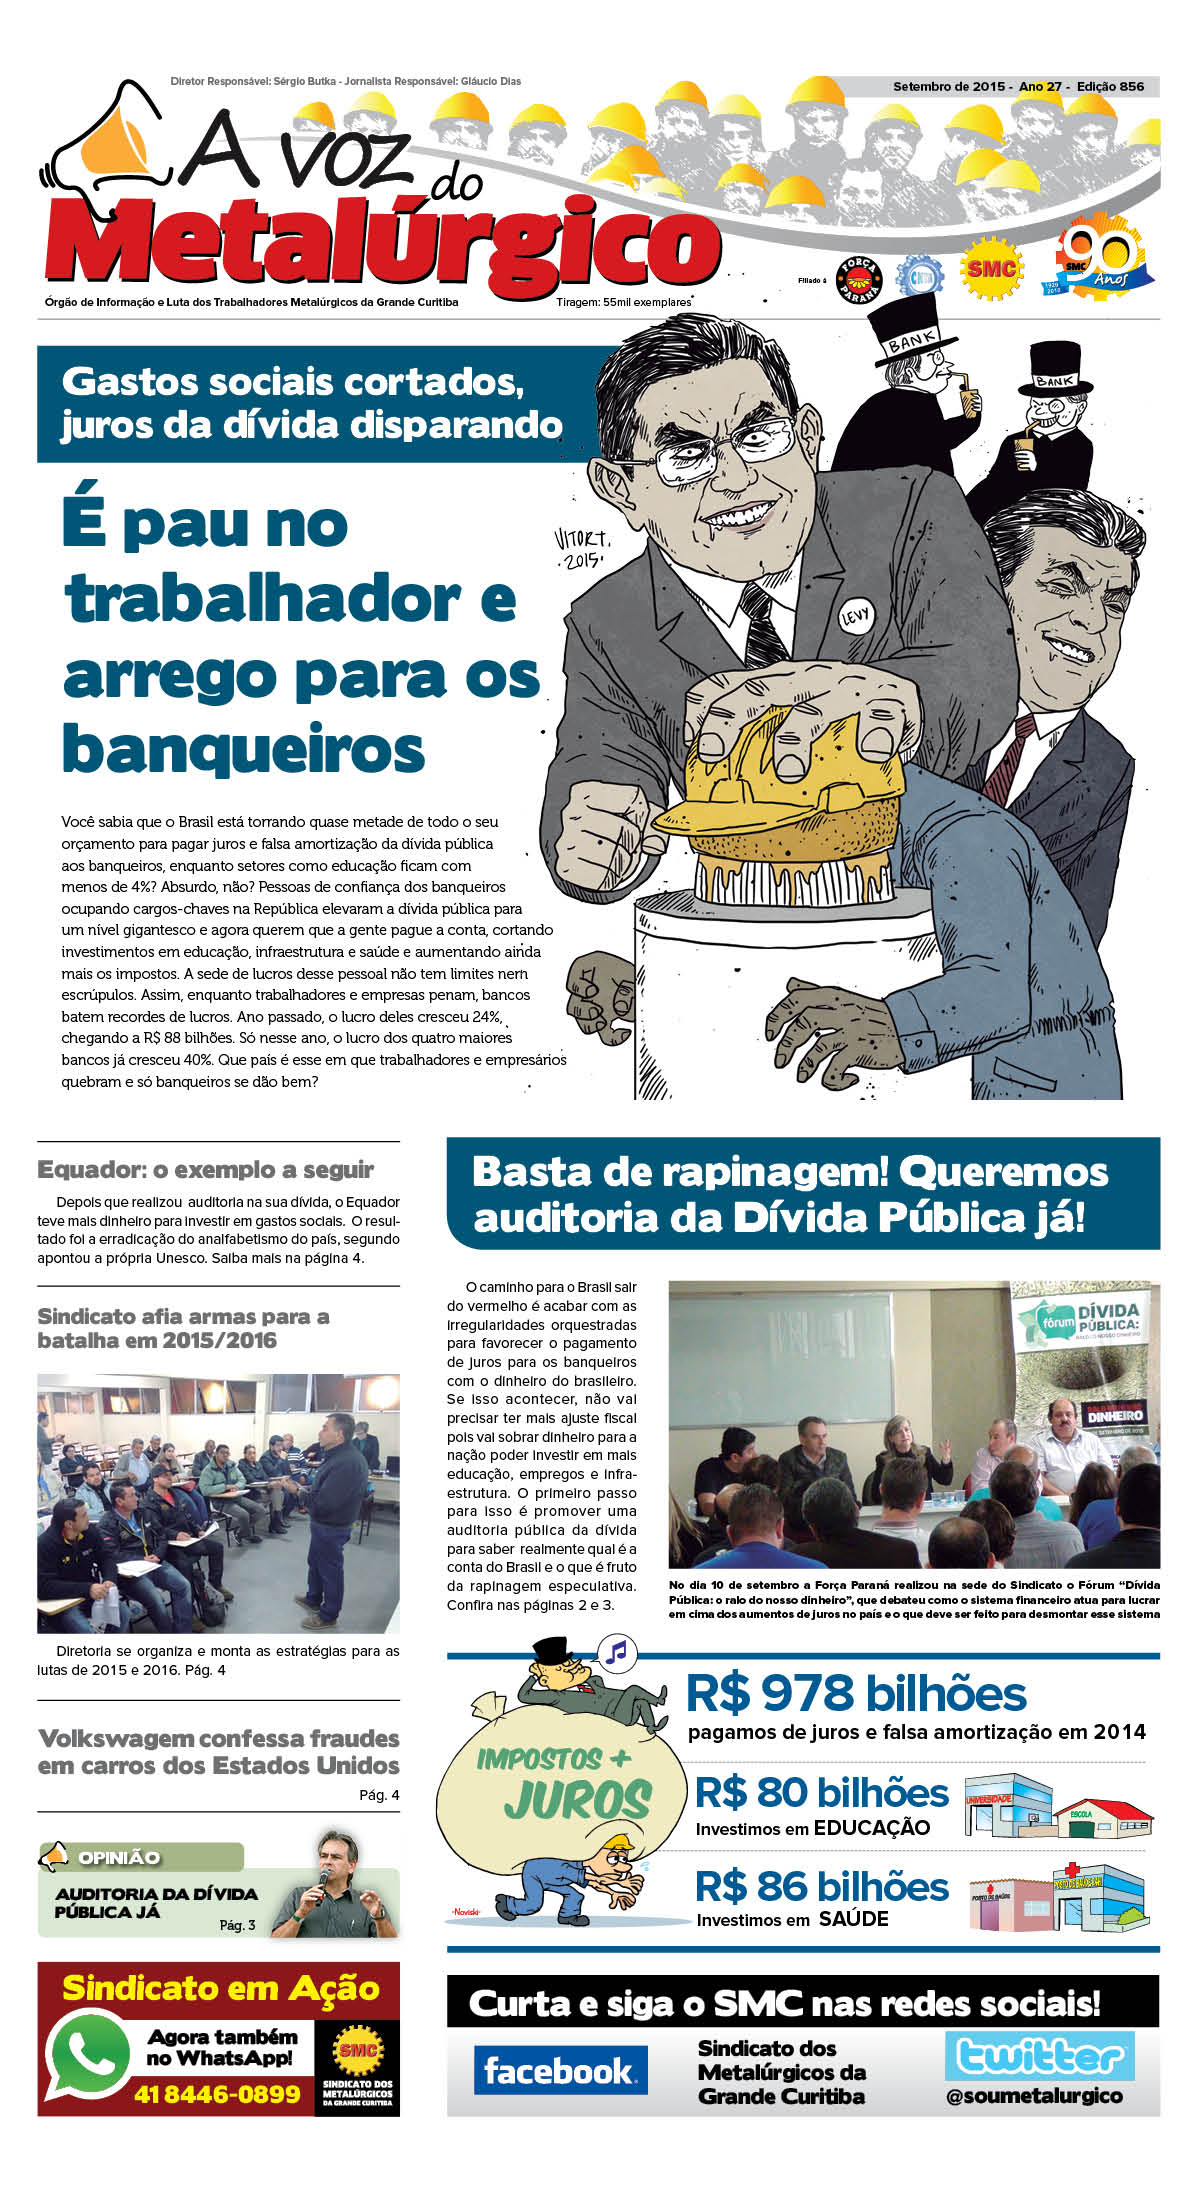 Confira a nova edição do jornal dos metalúrgicos da Grande Curitiba